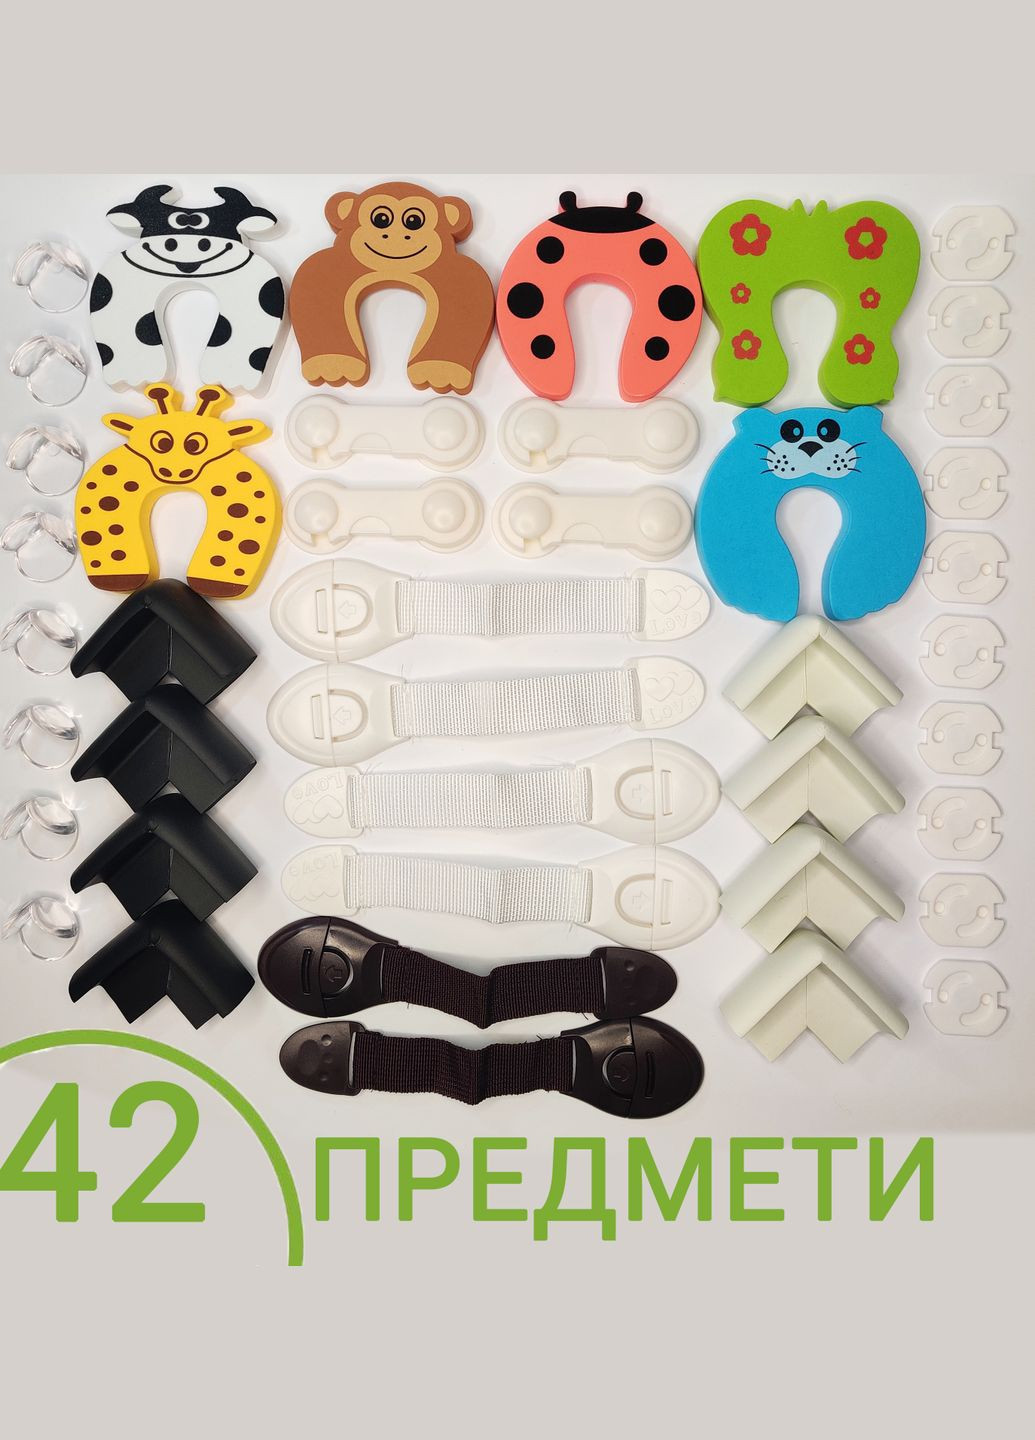 Набор 42 предметы Защита на мебель и розетки от детей Детская безопасность уголкификсаторы, заглушки, замки Разноцветный Vela (273255318)